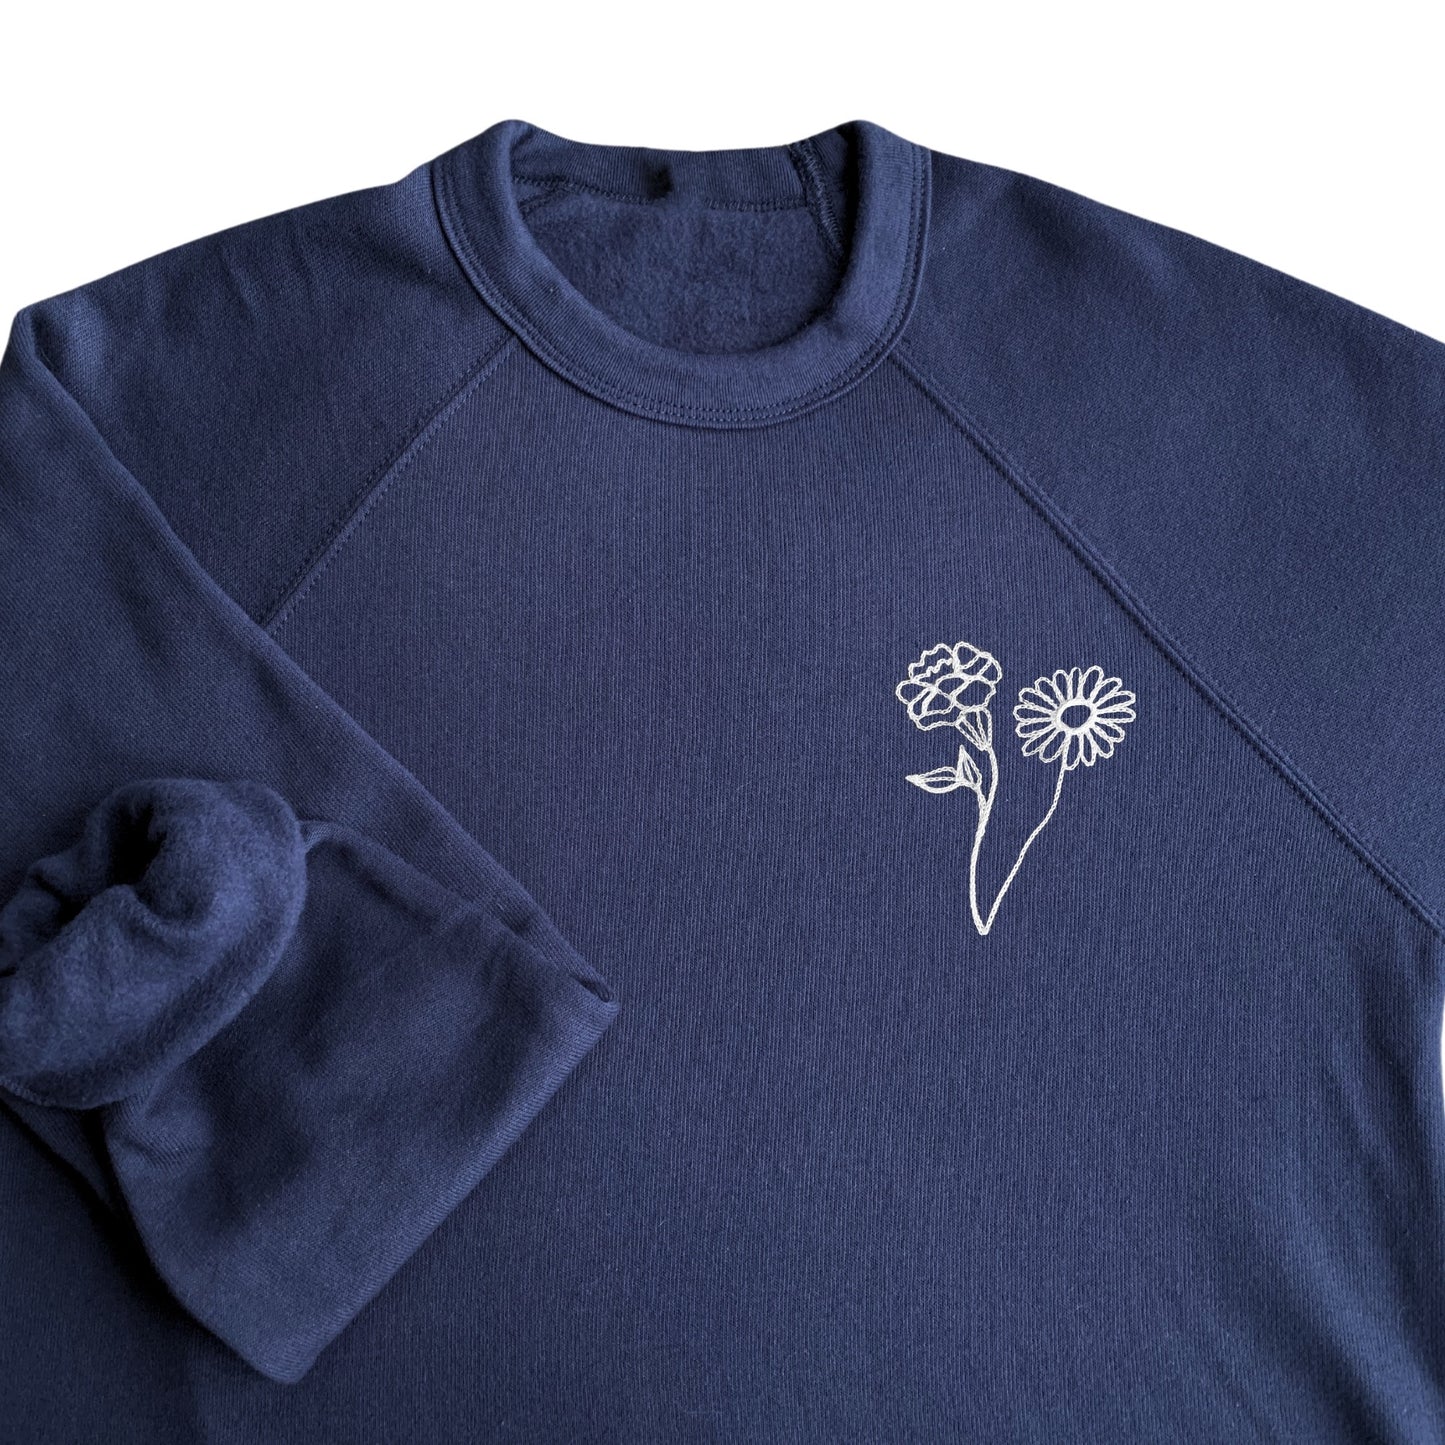 The Birth Flower Sweatshirt - Navy